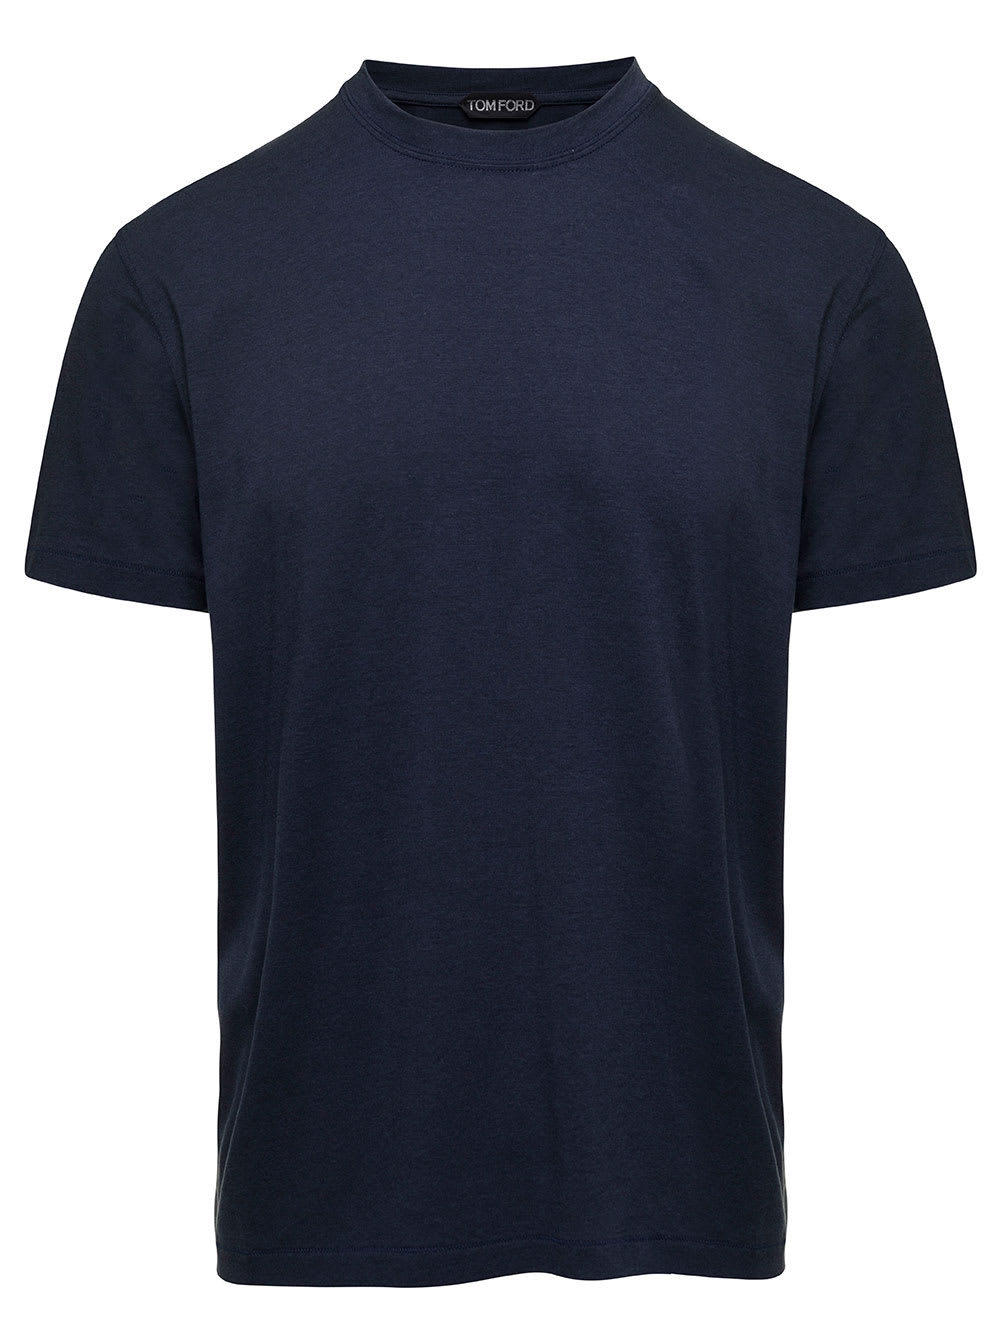 Tom Ford T-shirt Basica